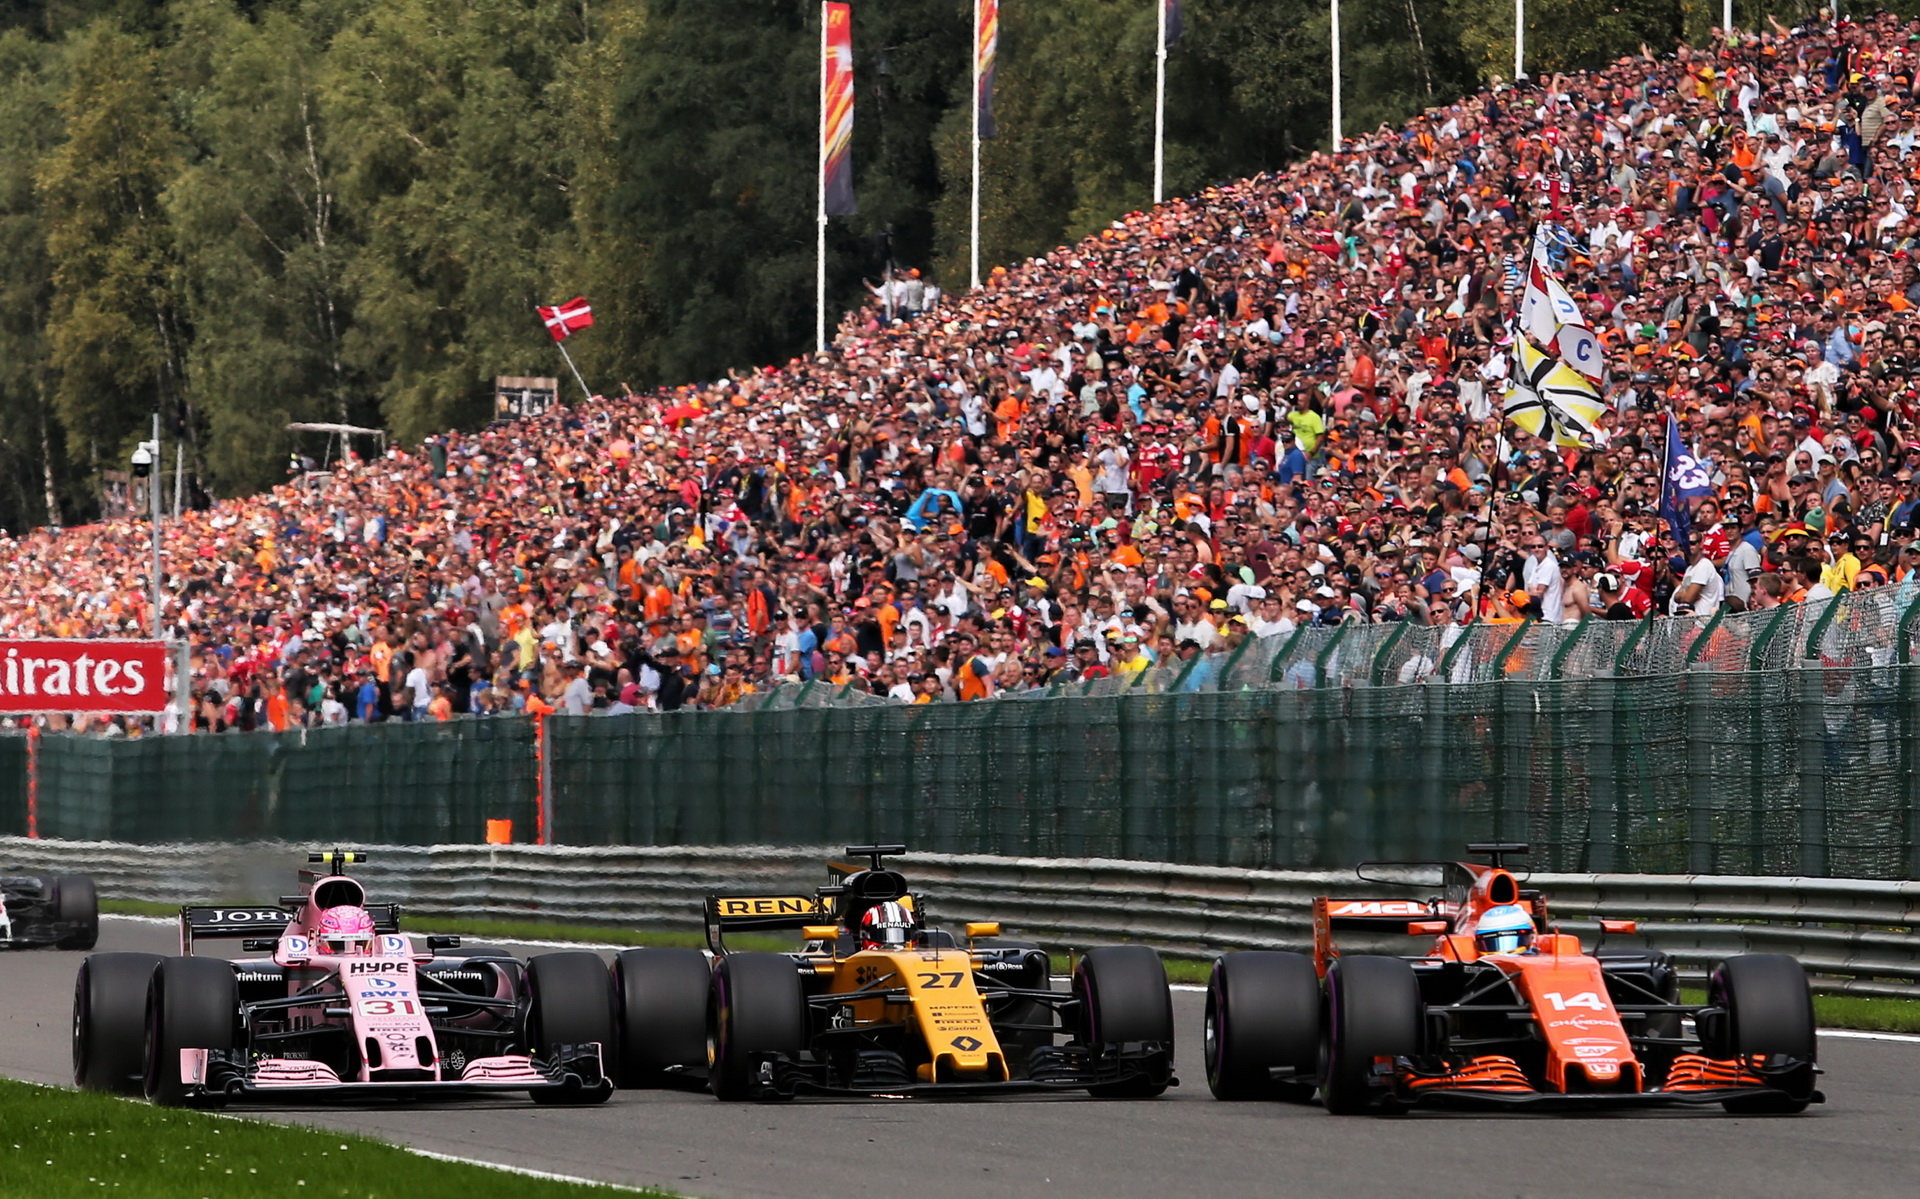 Španěla s McLarenem po dobrém startu postupně předjížděl jeden soupeř za druhým, odstoupil z 13. místa